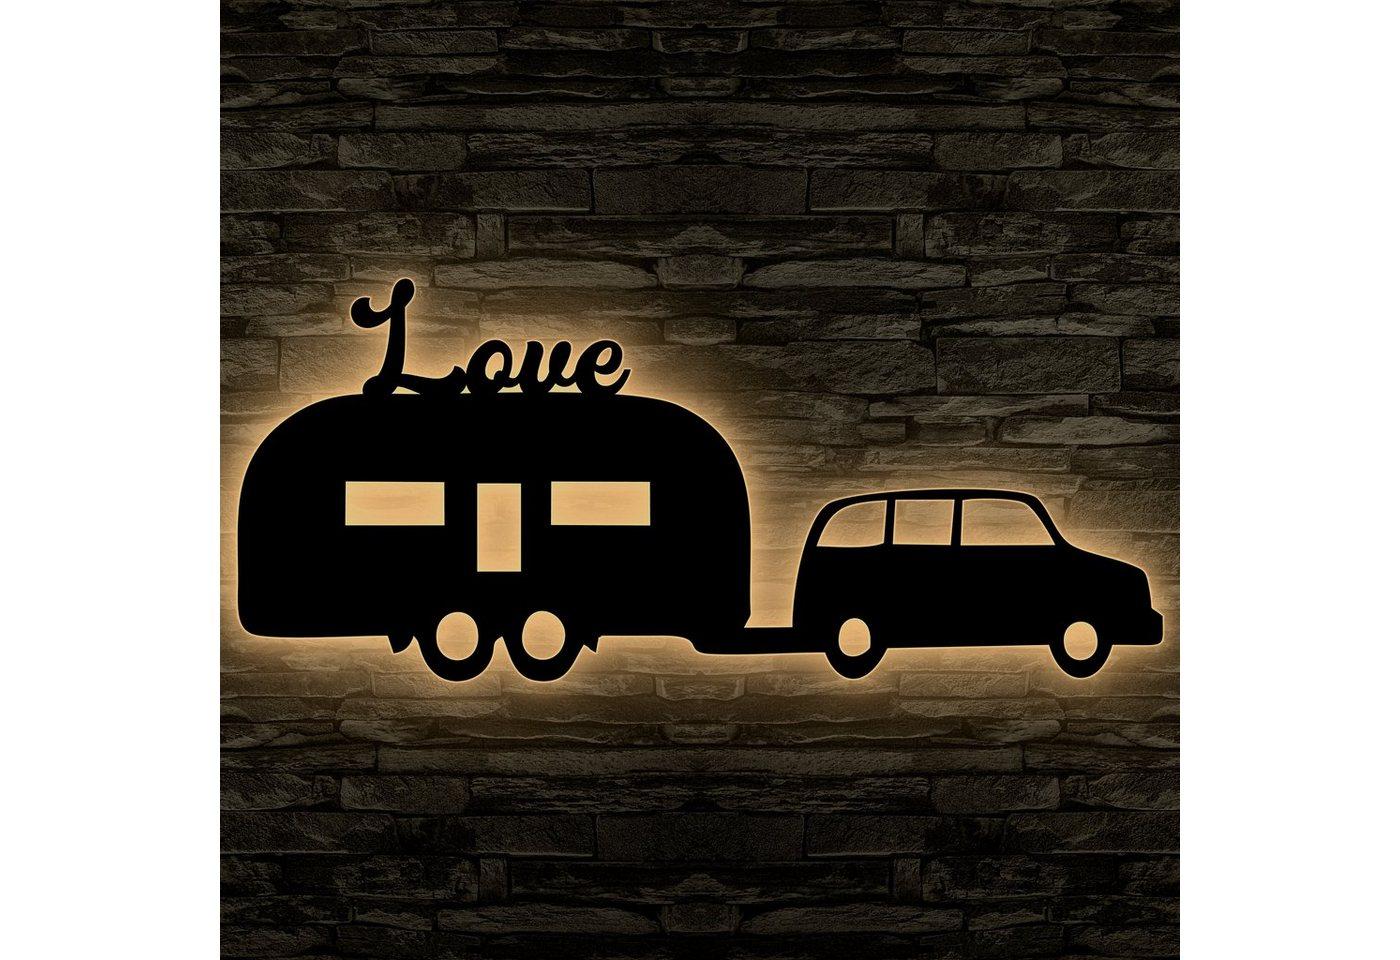 LEON FOLIEN Dekofigur Wohnwagen Anhänger Auto LED Deko Nachtlicht PKW Buche #19